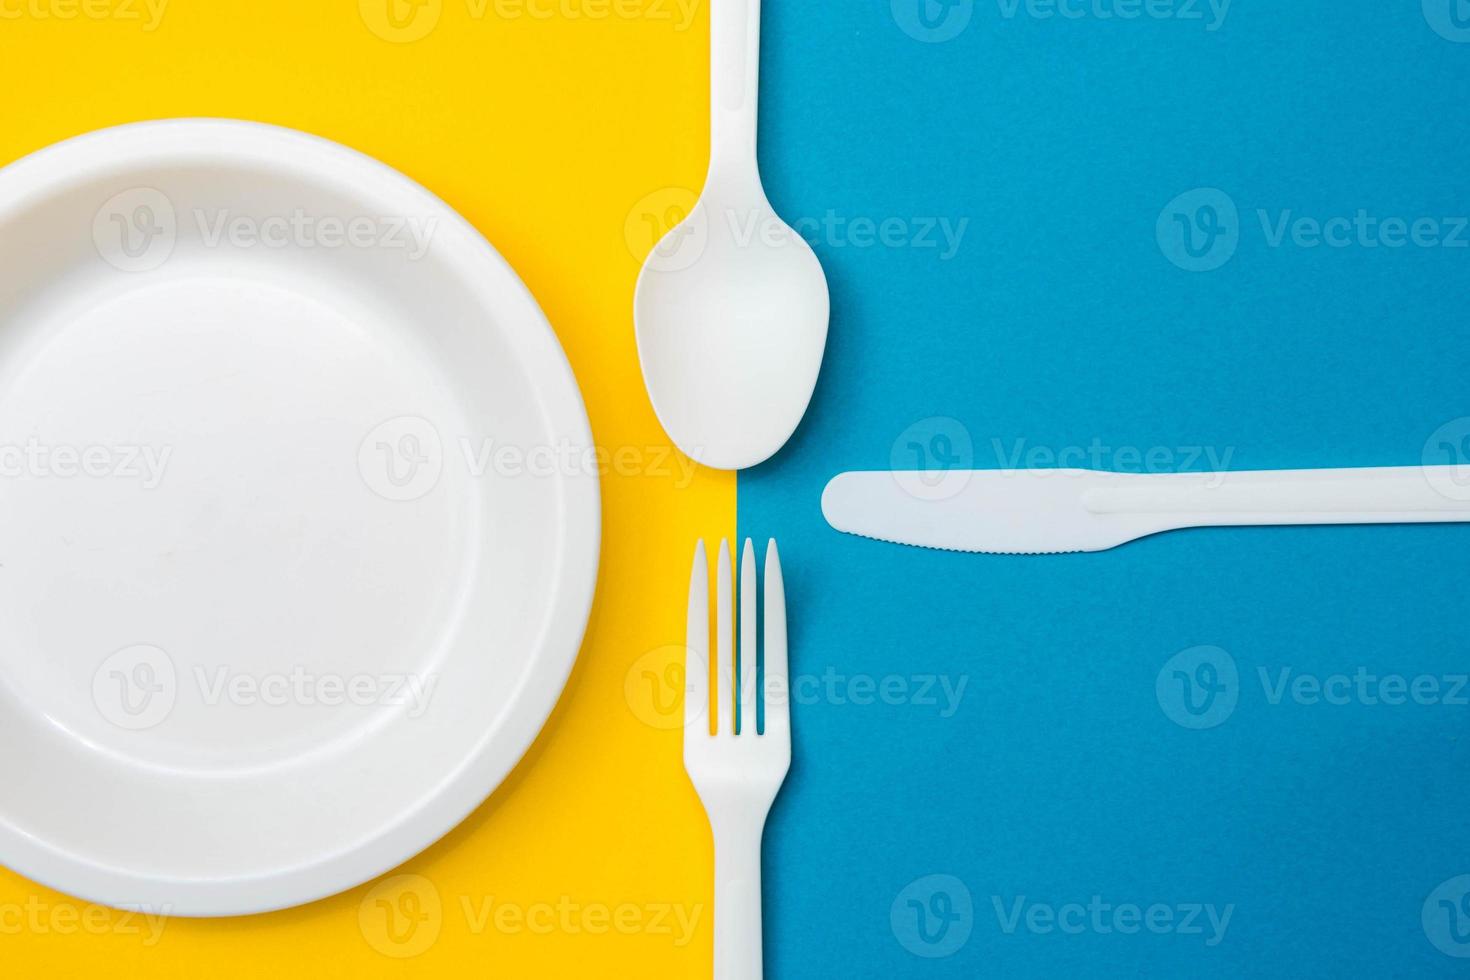 garfo, faca, colher e prato de plástico branco sobre fundo amarelo e azul foto